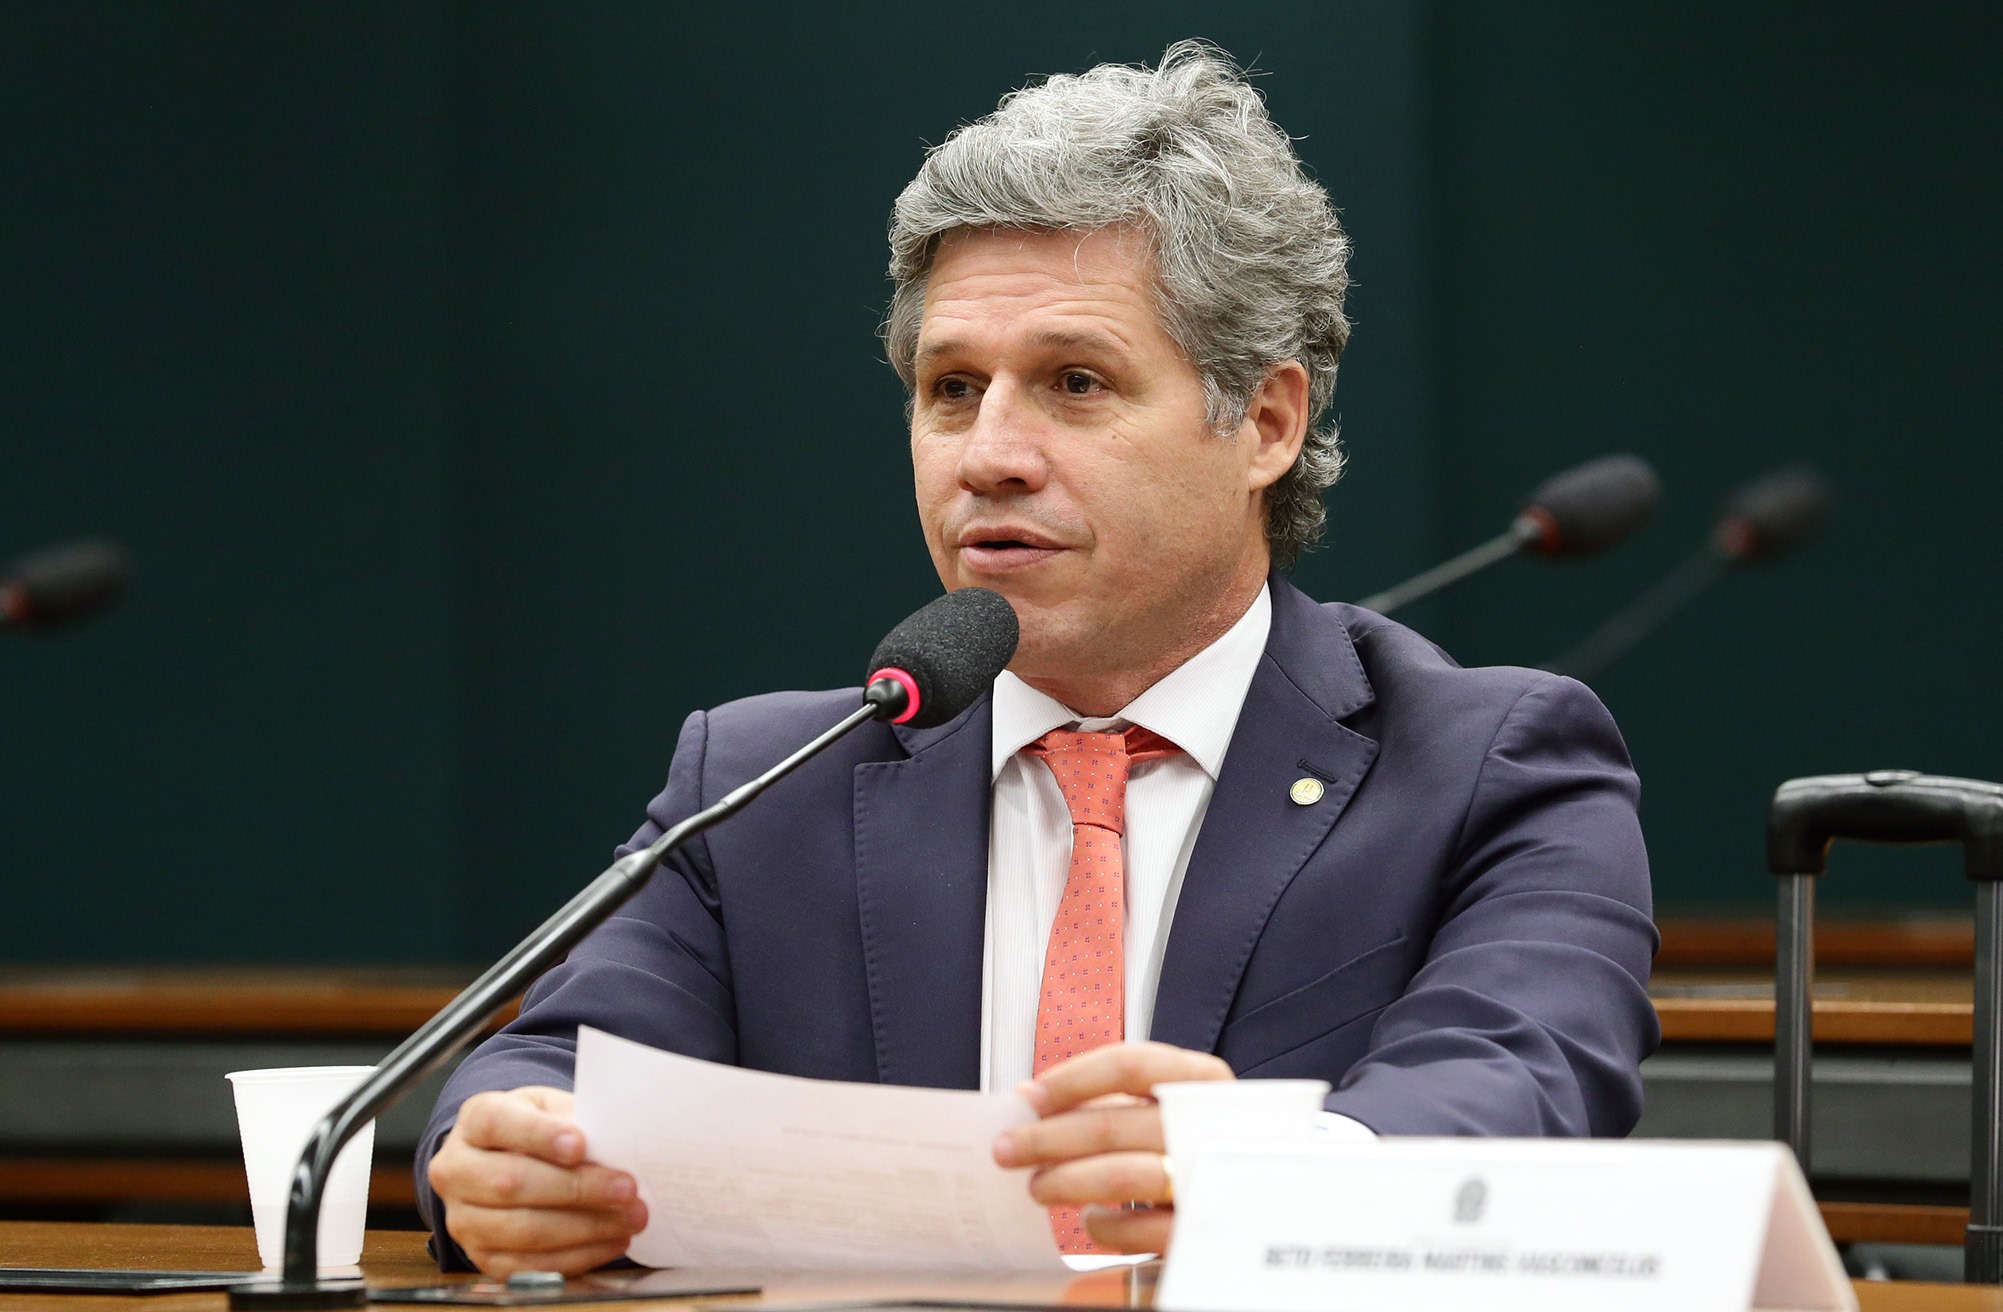 Michel Jesus/Câmara dos Deputados / Audiência pública. Dep. Paulo Teixeira (PT - SP)Paulo Teixeira espera reforçar as regras legais sobre qualidade do ar